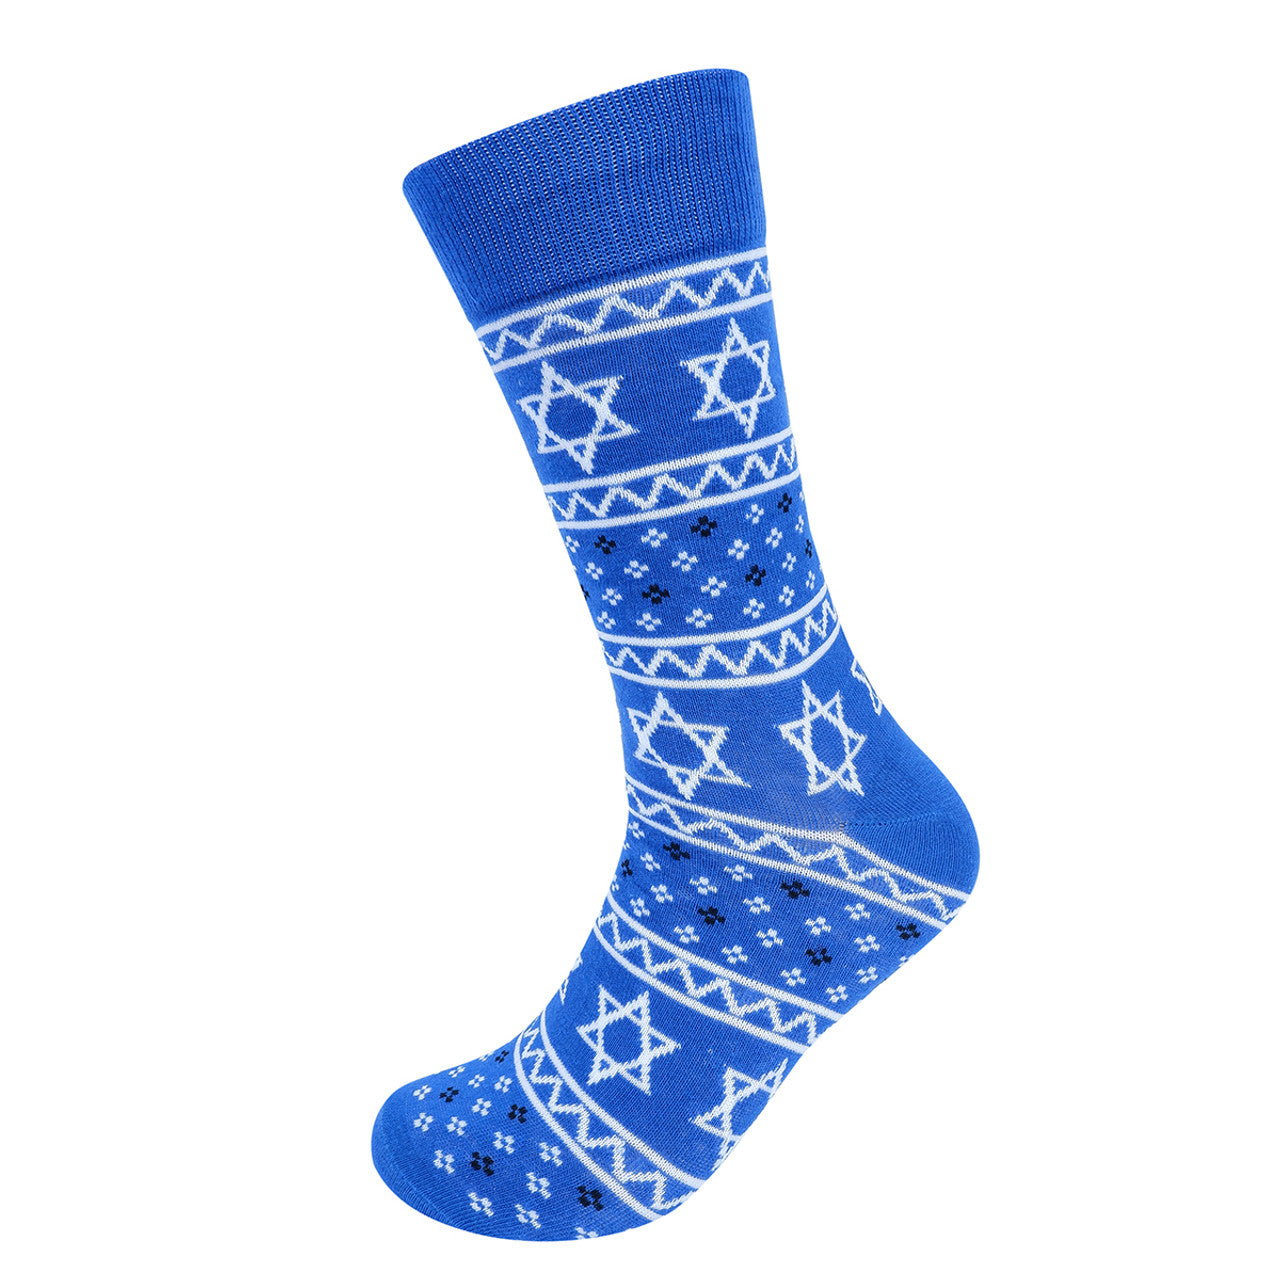 Men's Hanukkah Crew Sock - Blue and White